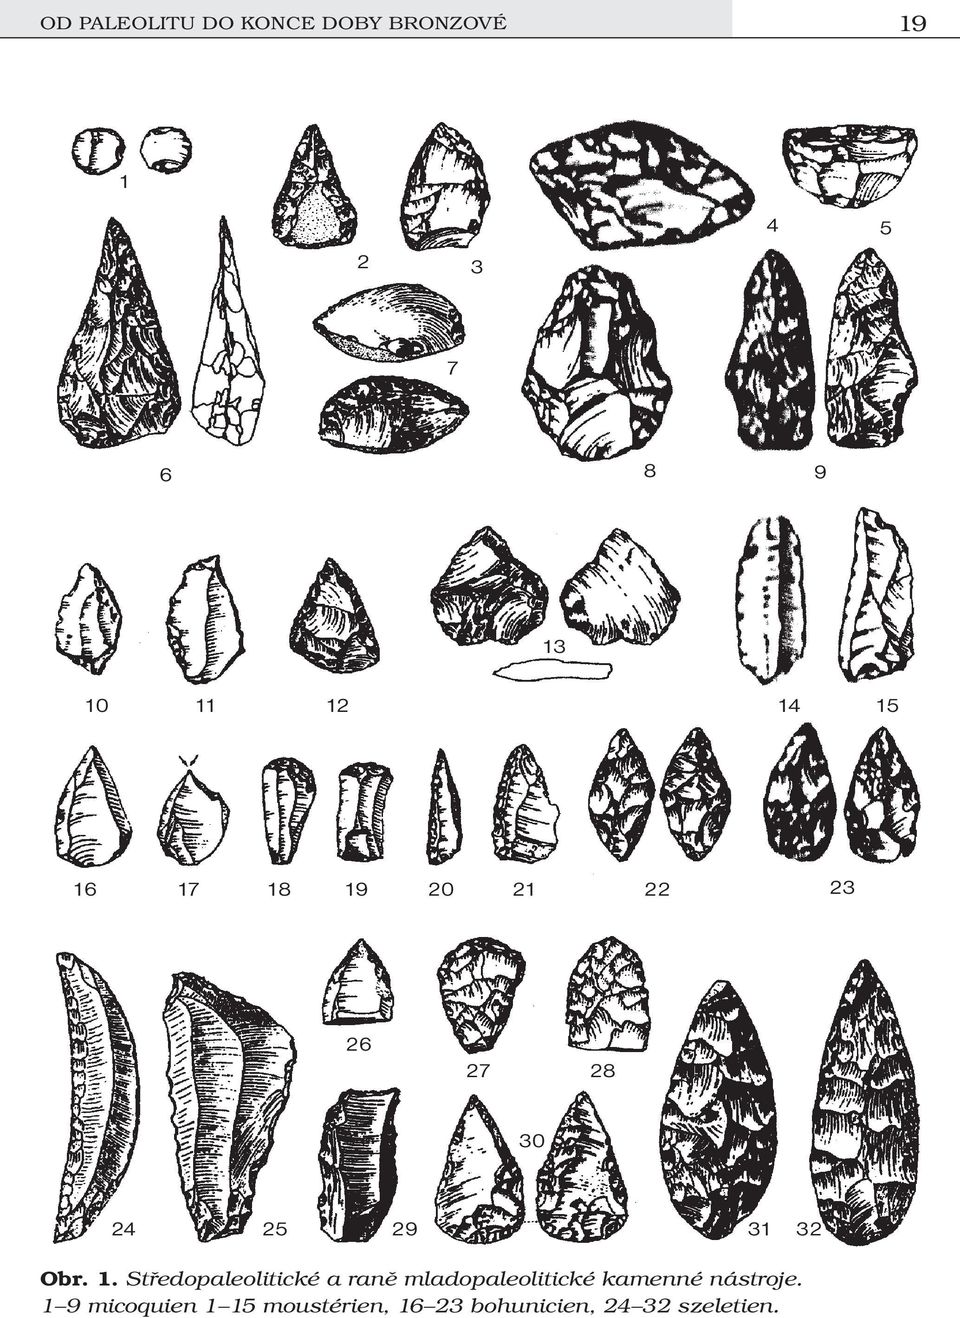 1. Středopaleolitické a raně mladopaleolitické kamenné nástroje.